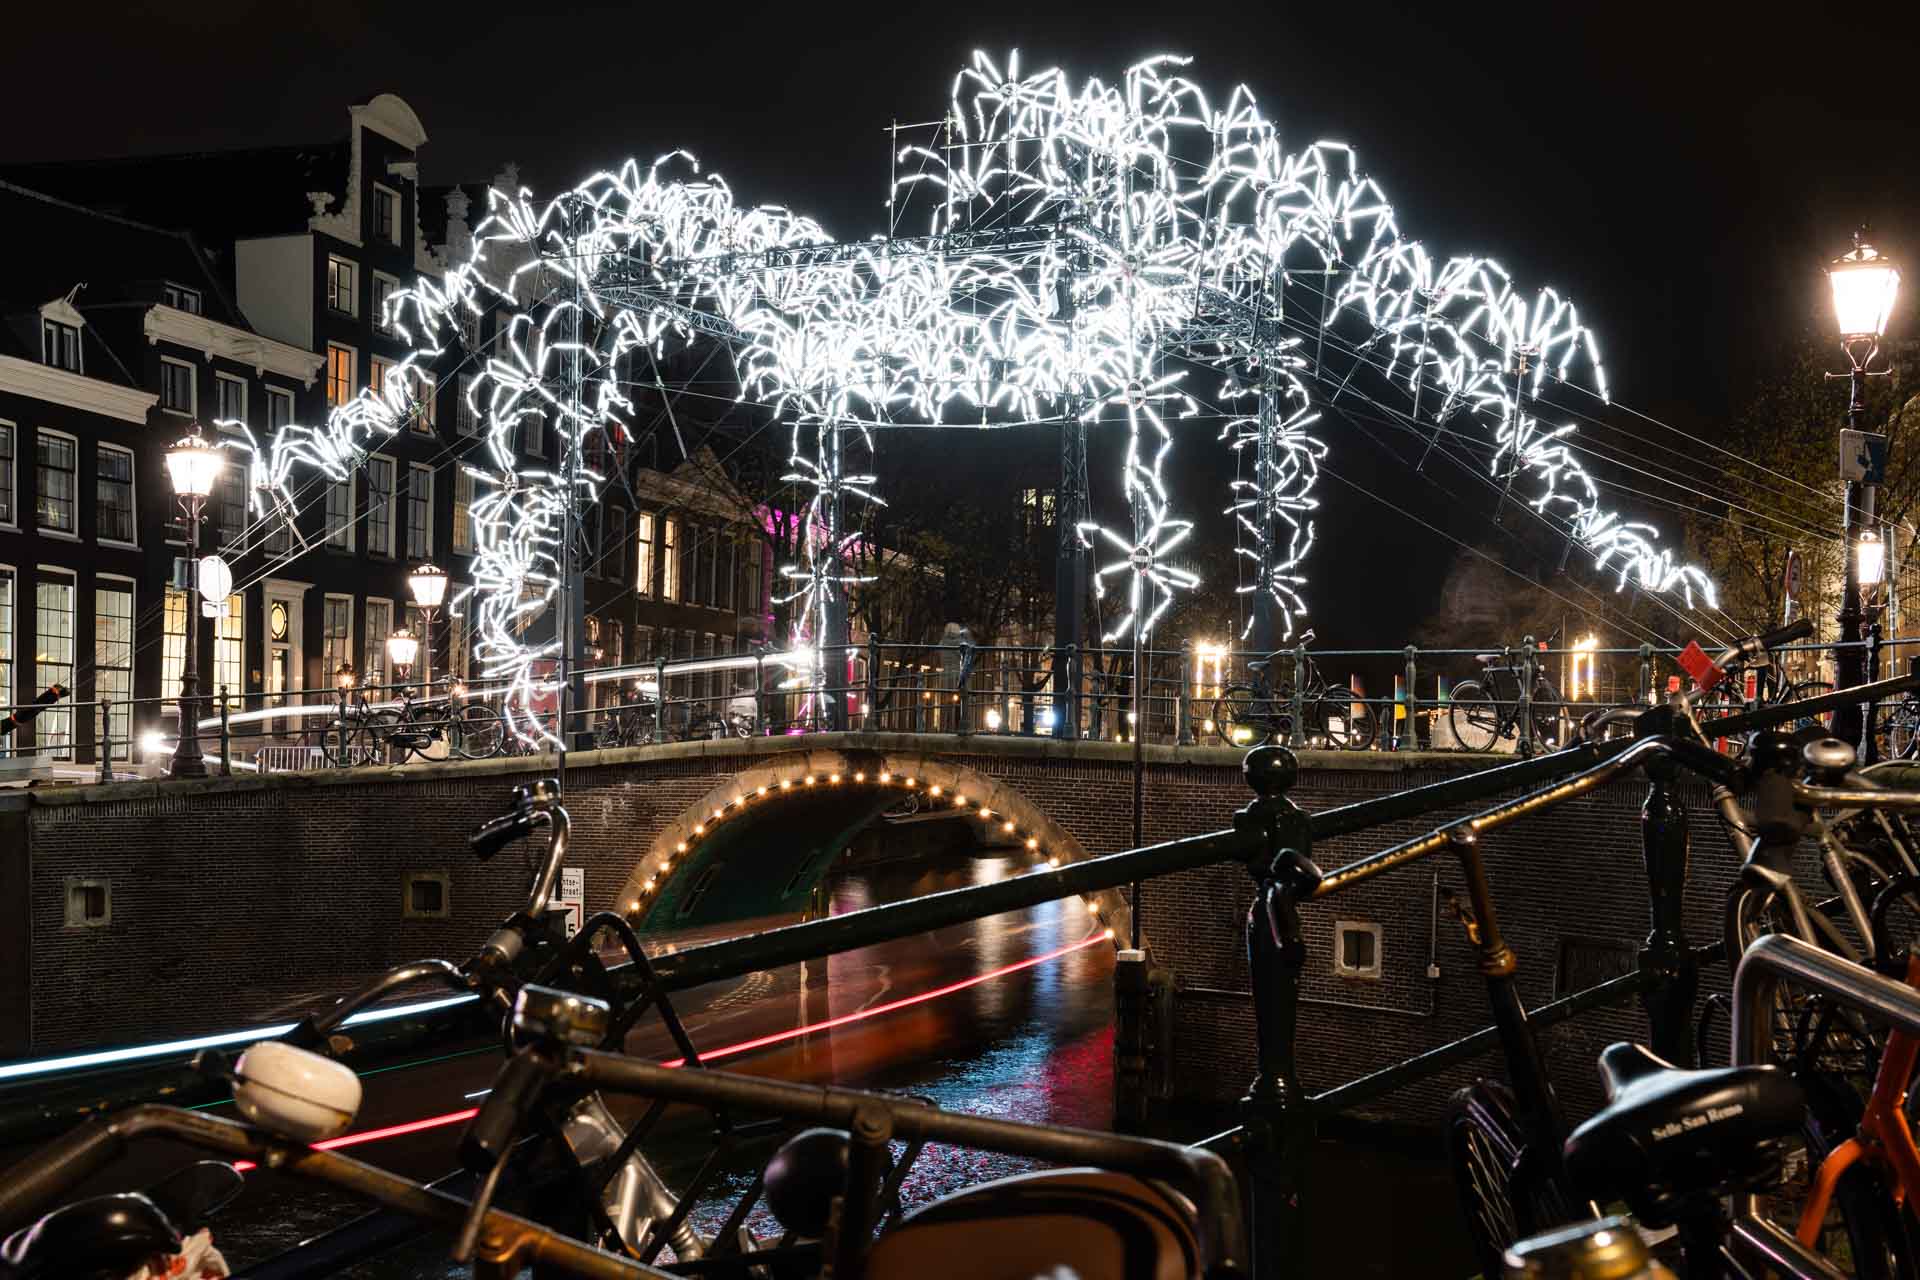 Amsterdam Light Festival 2018